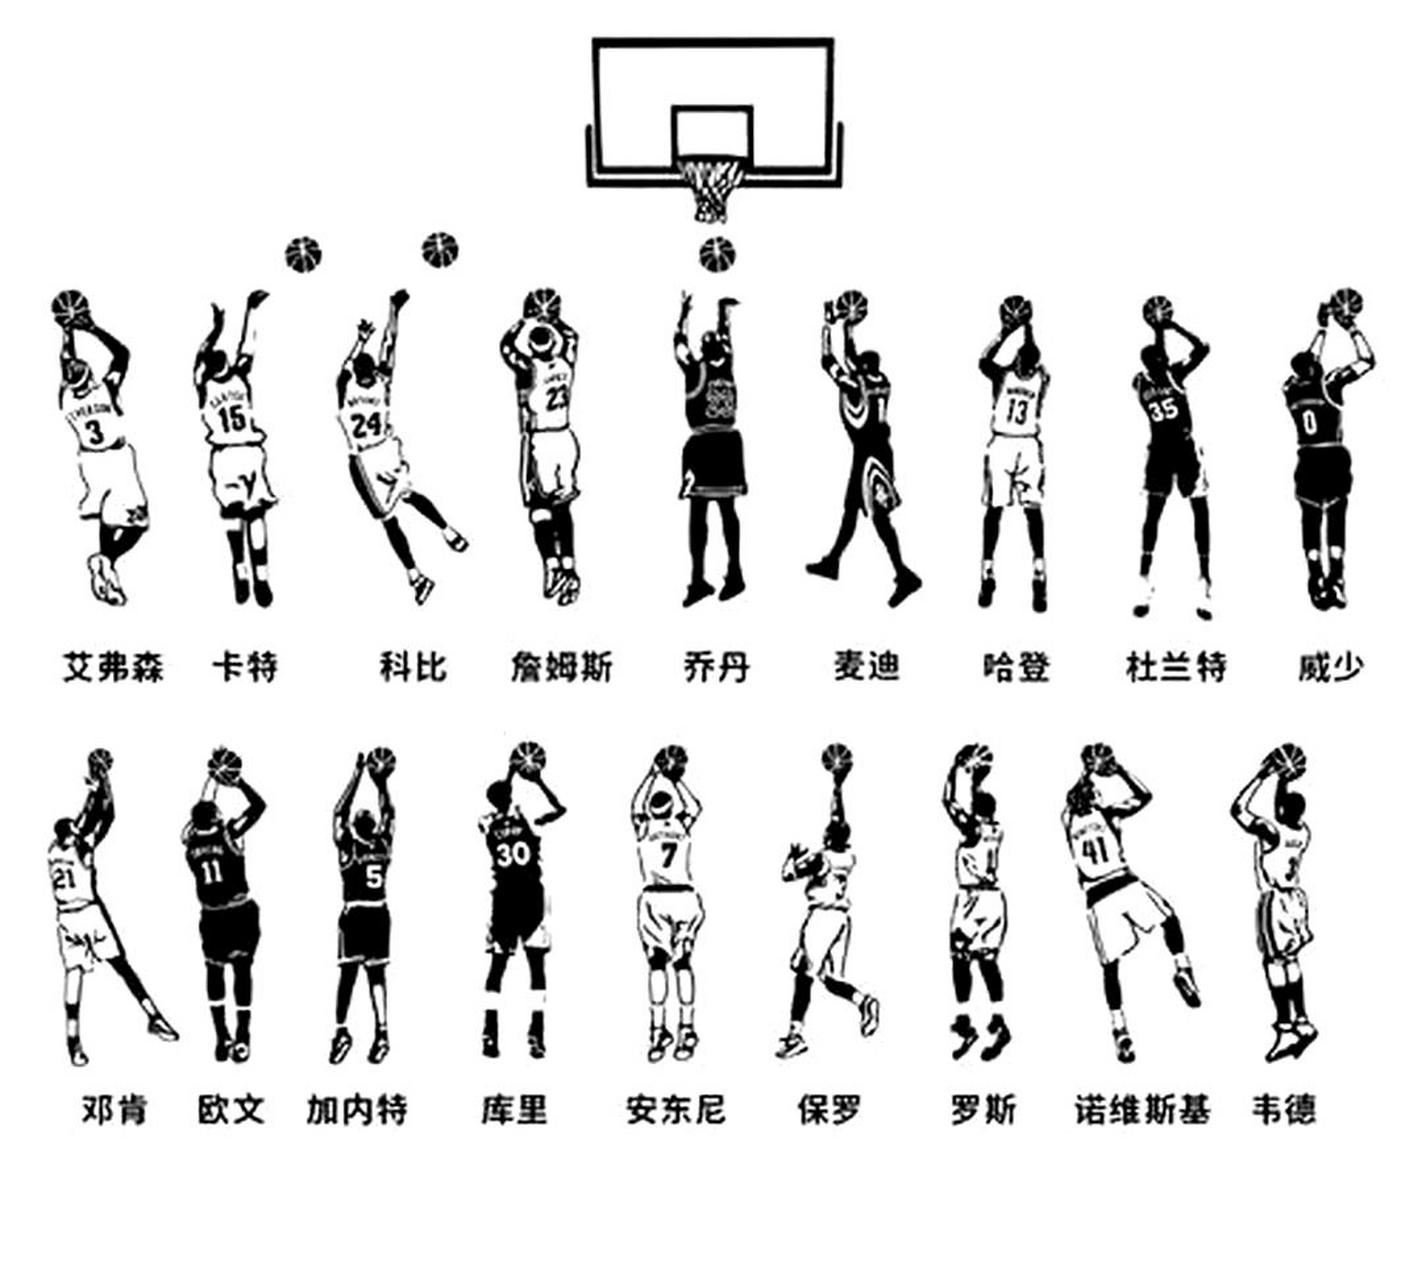 篮球姿势投球图解图片